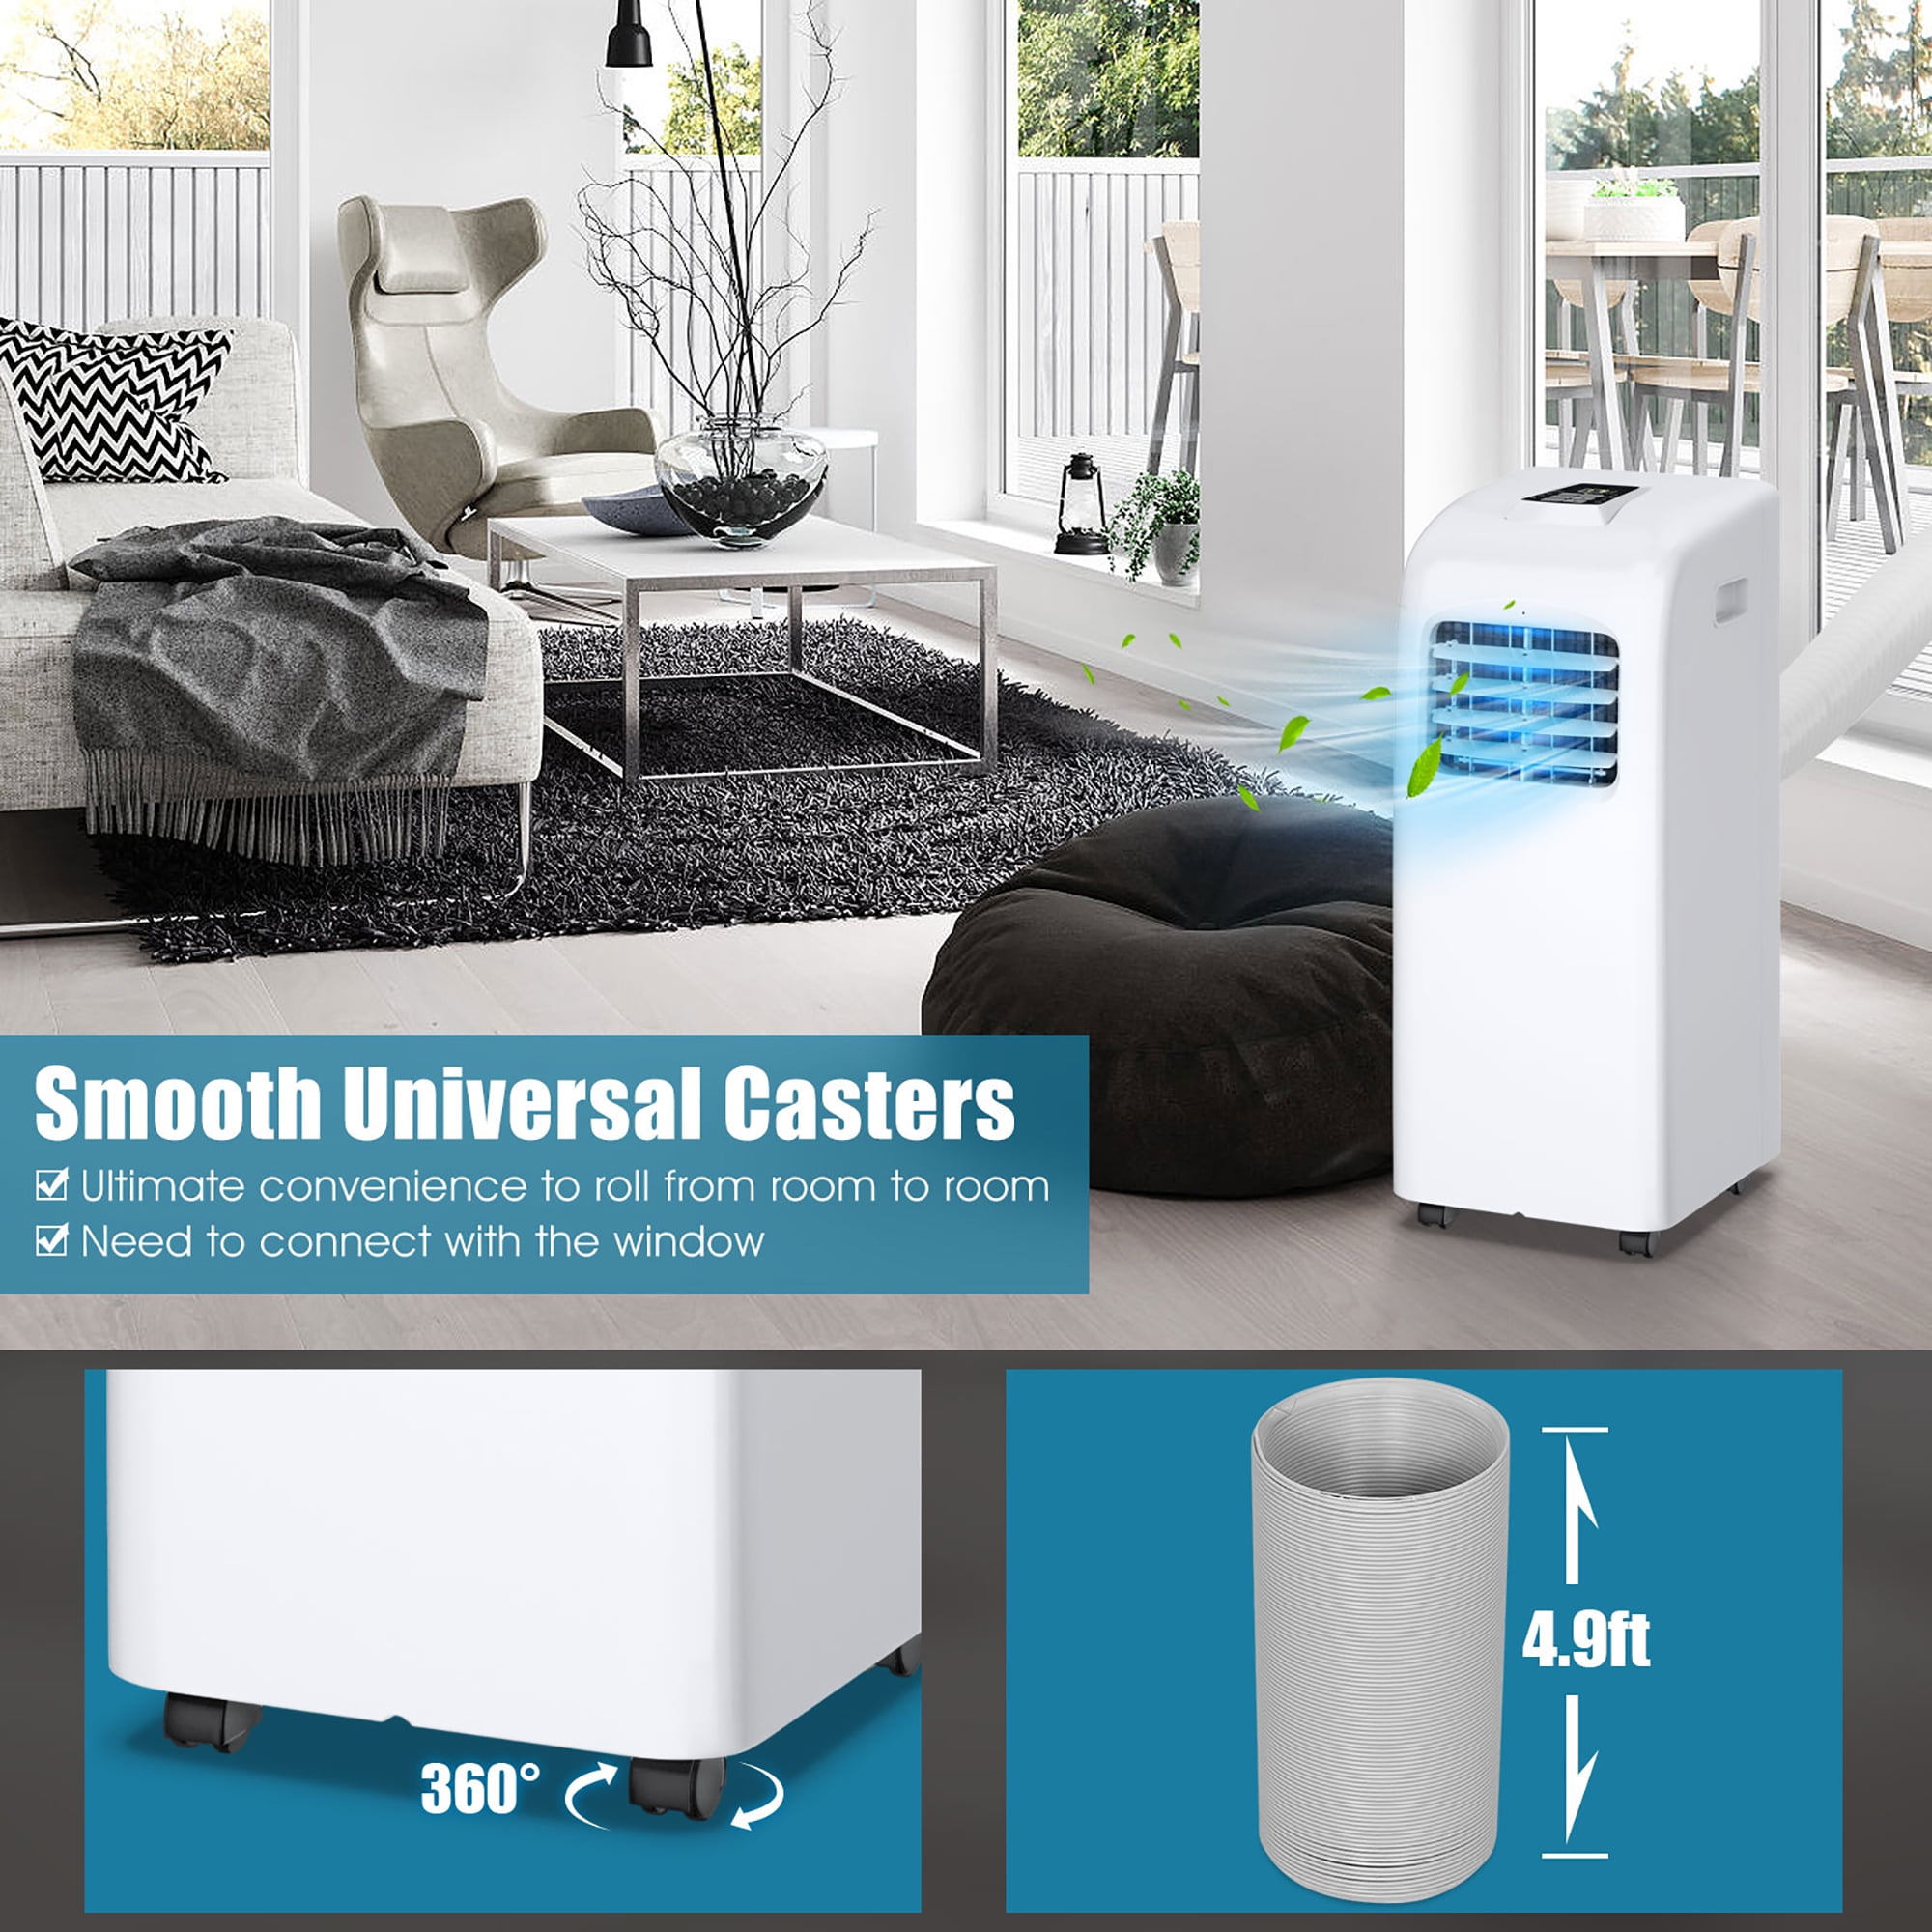 5,500 BTU (10,000 BTU ASHRAE) Portable Air Conditioner with Remote